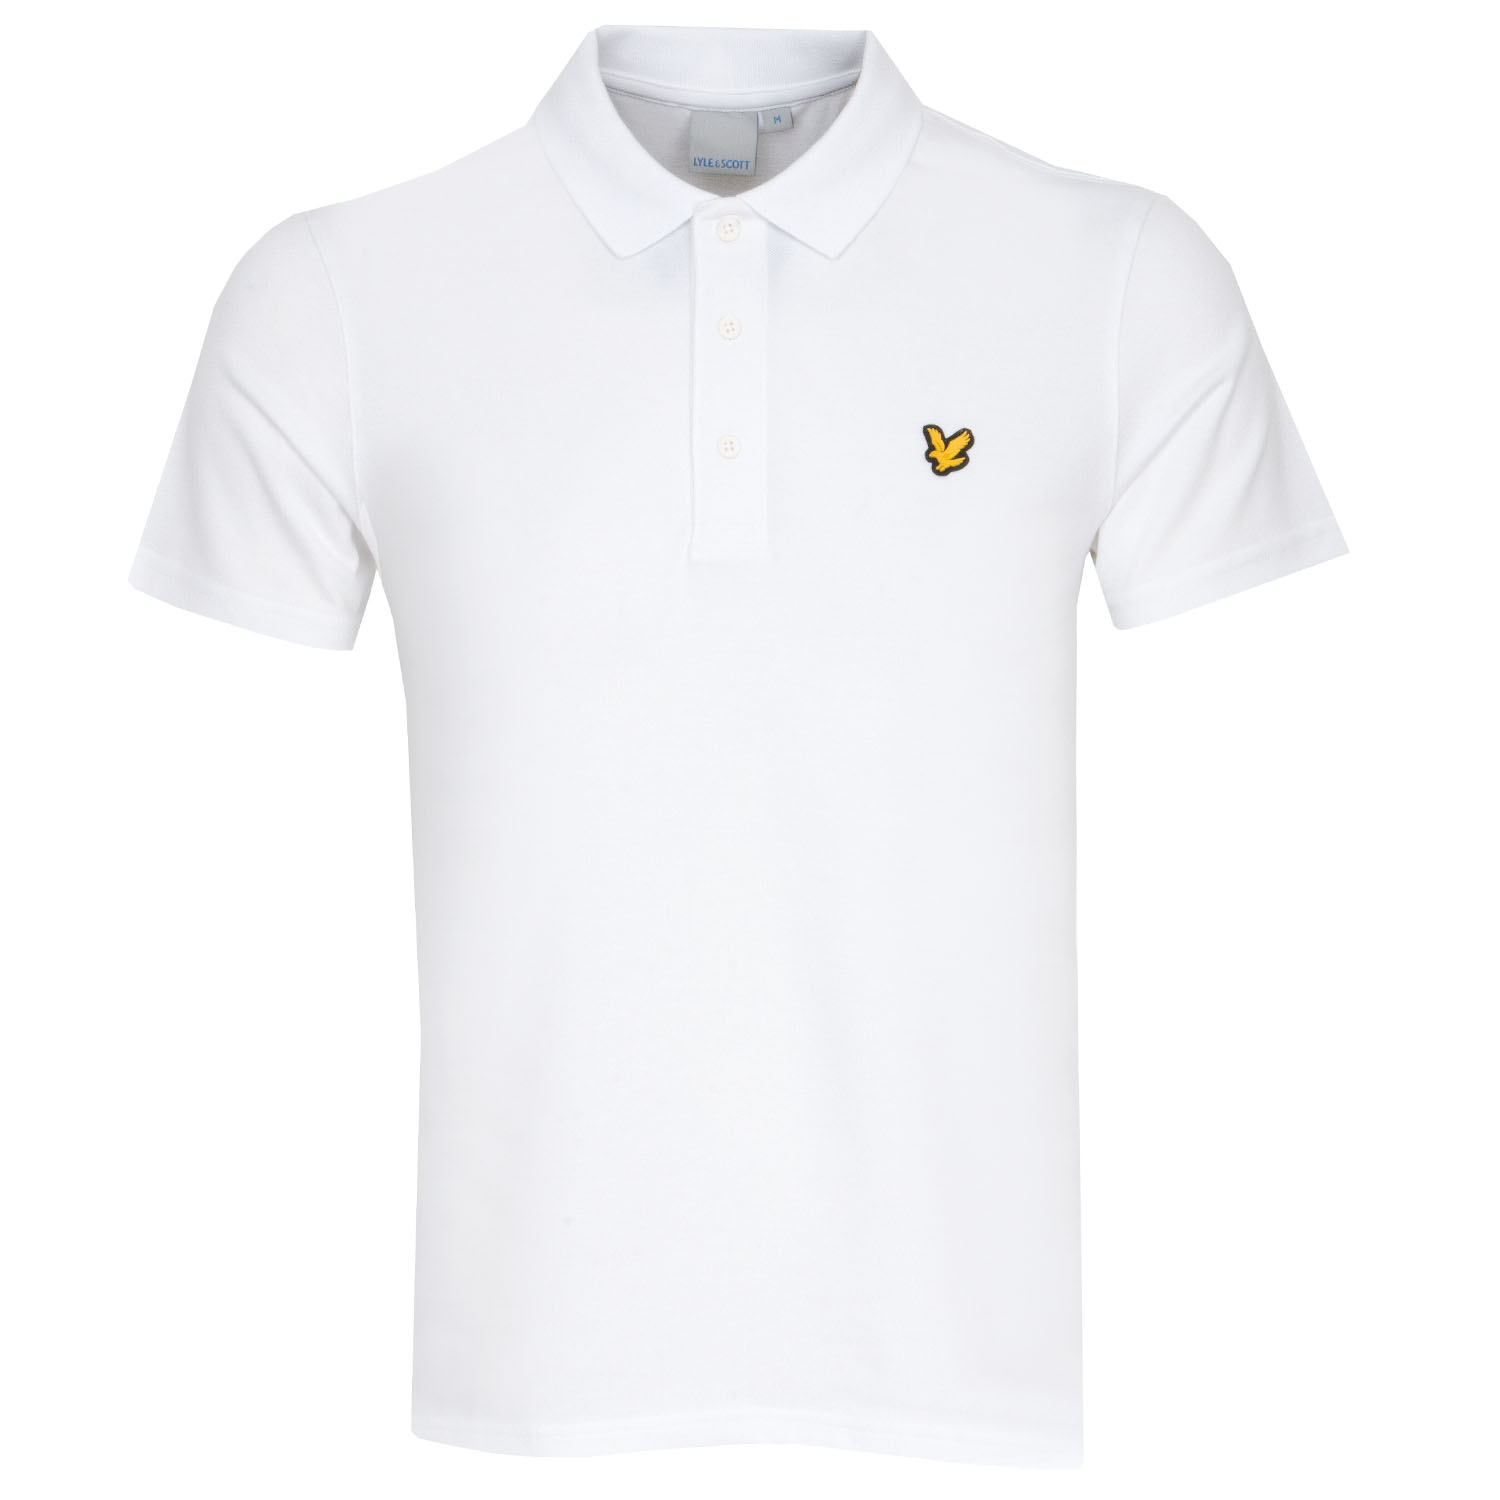 Lyle & Scott Sport Polo Shirt White | Scottsdale Golf